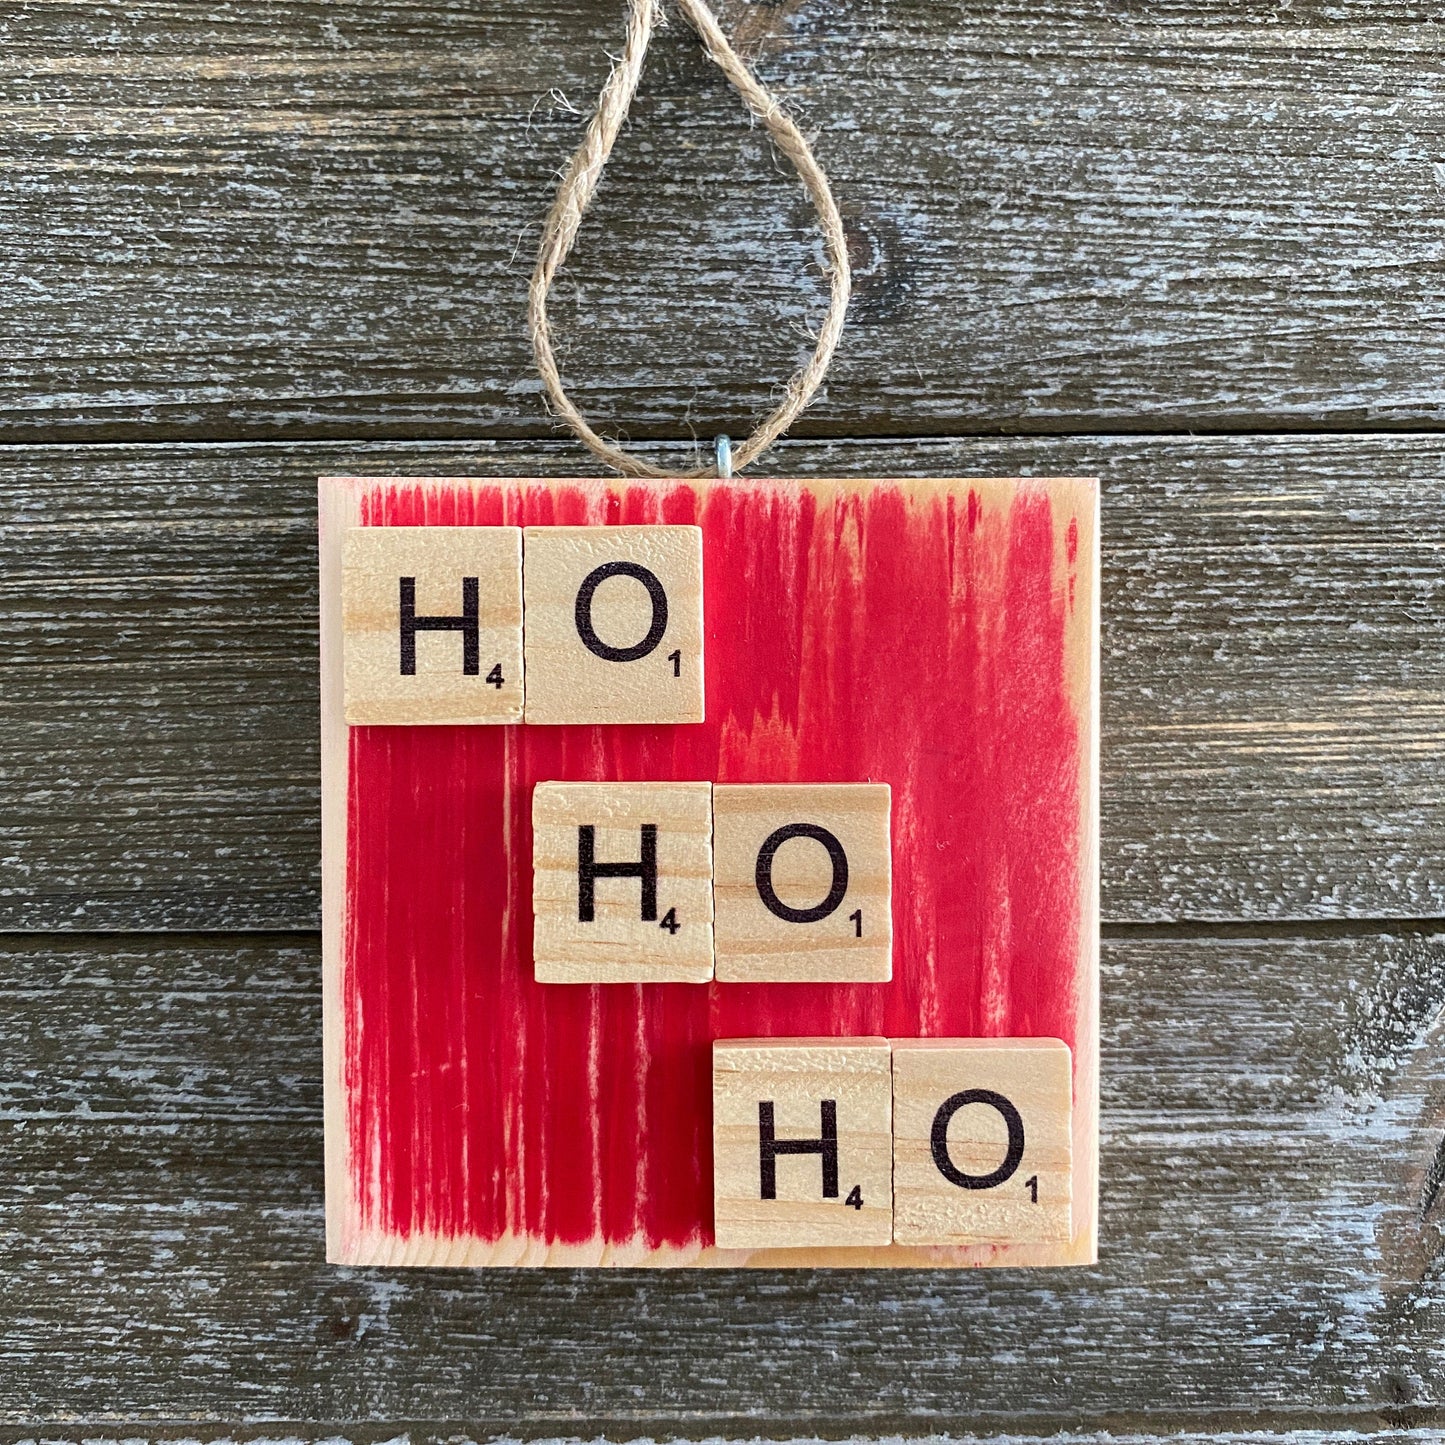 Christmas Ornament - HO HO HO